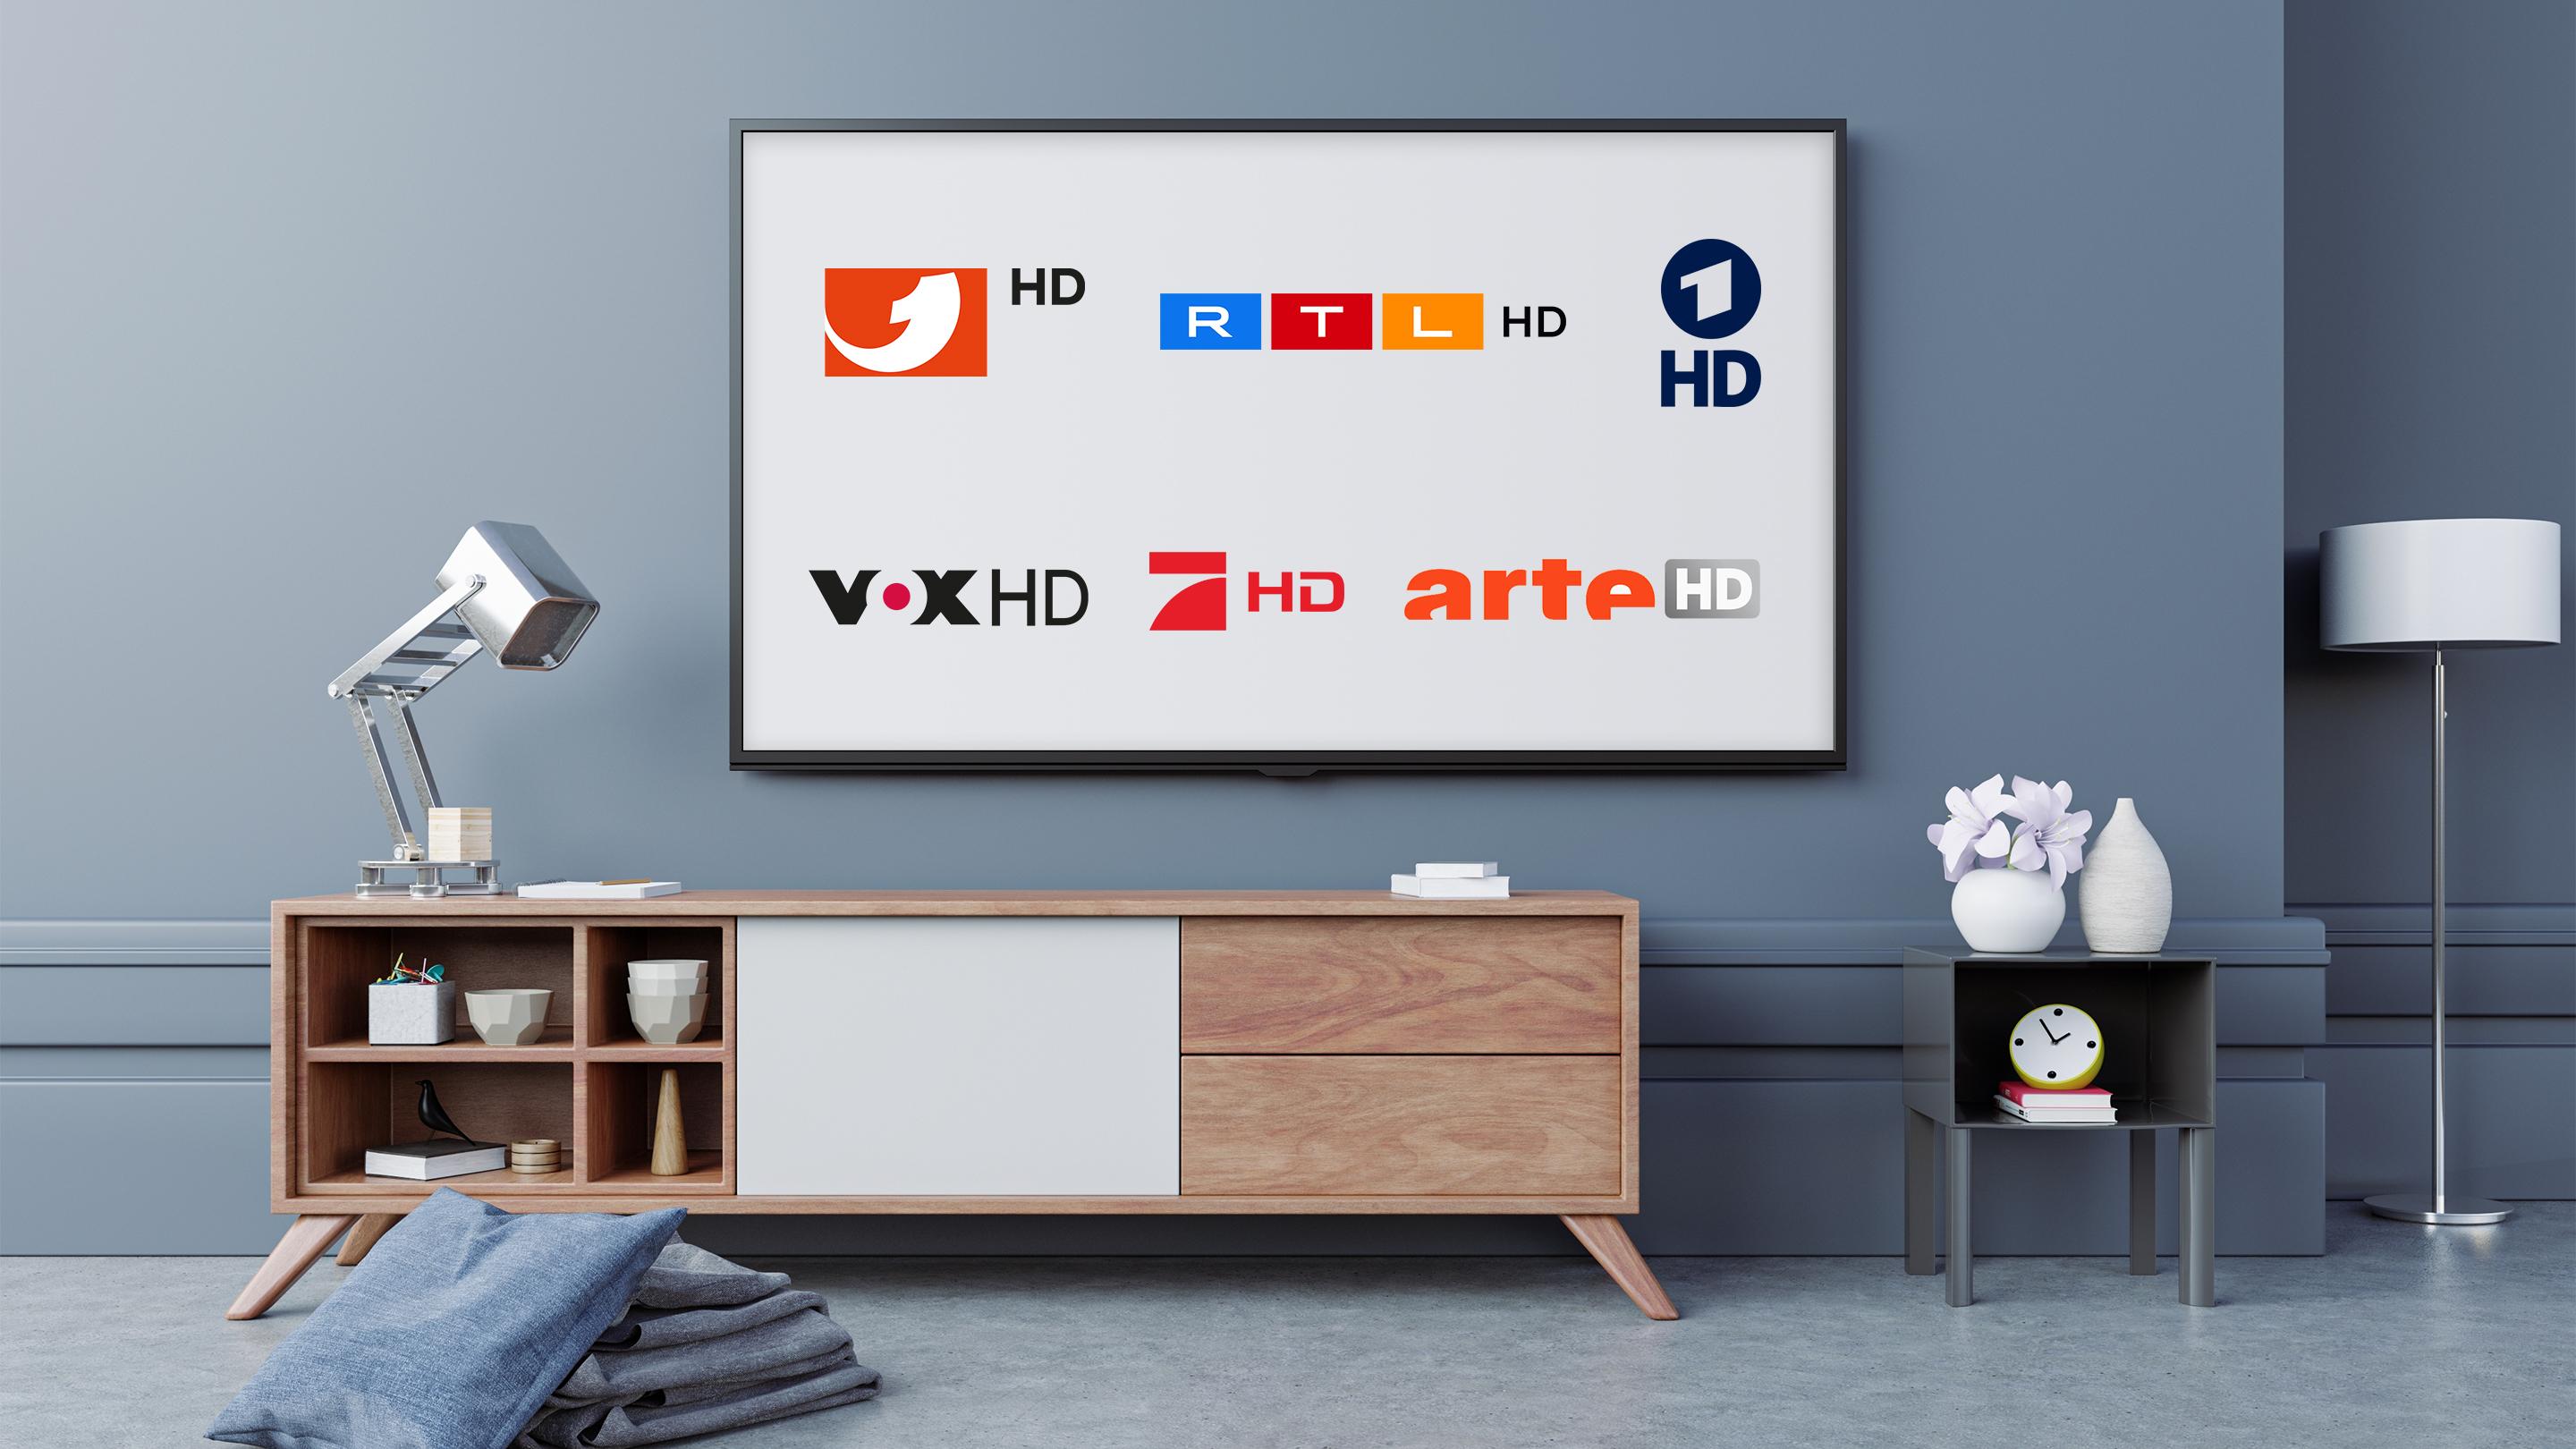 Fernseher an der Wand hängend auf dem Logos verschiedener Fernsehsender zu sehen sind